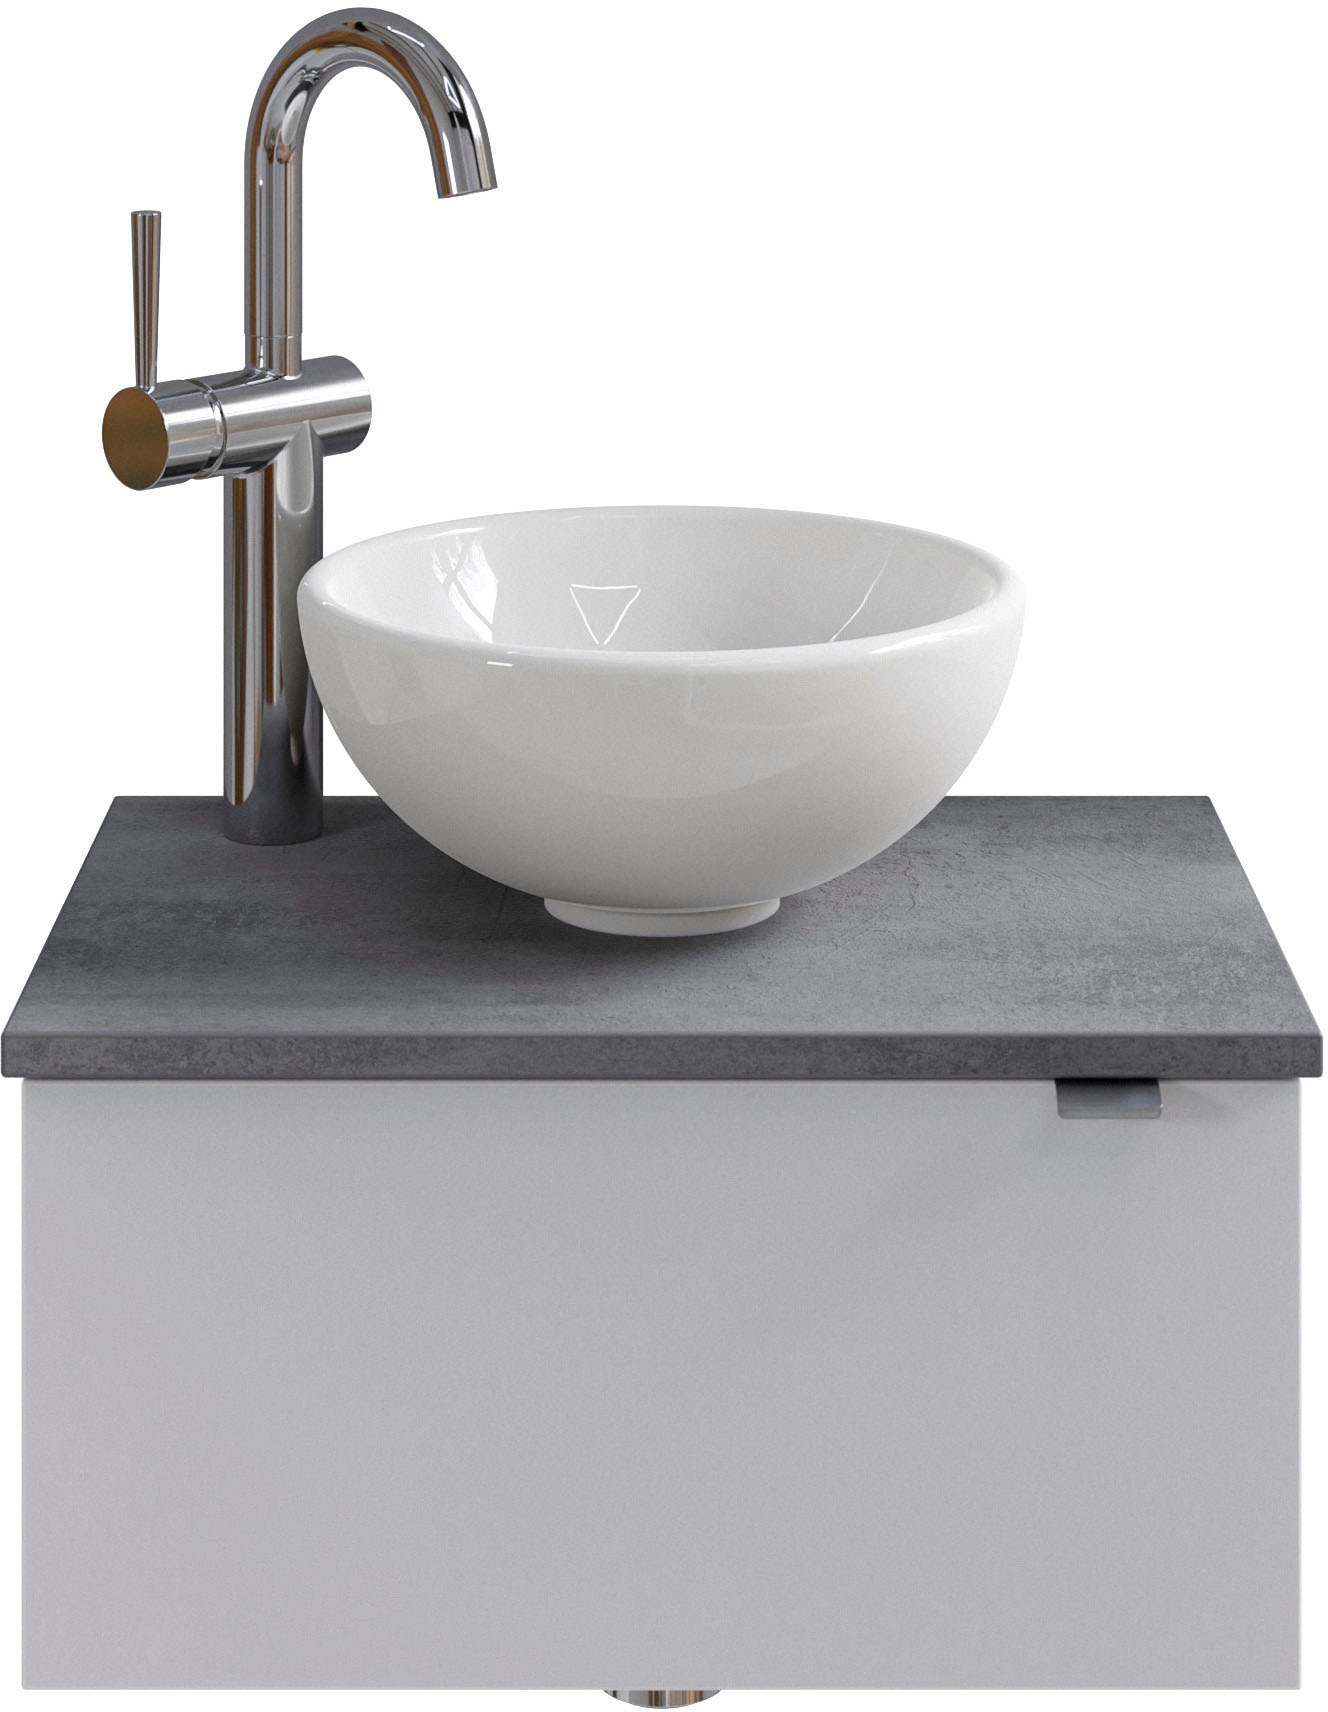 Saphir Waschtisch »Serie 6915 Waschschale mit Unterschrank für Gästebad, Gäste WC«, 51 cm breit, 1 Tür, Waschtischplatte, kleine Bäder, ohne Armatur